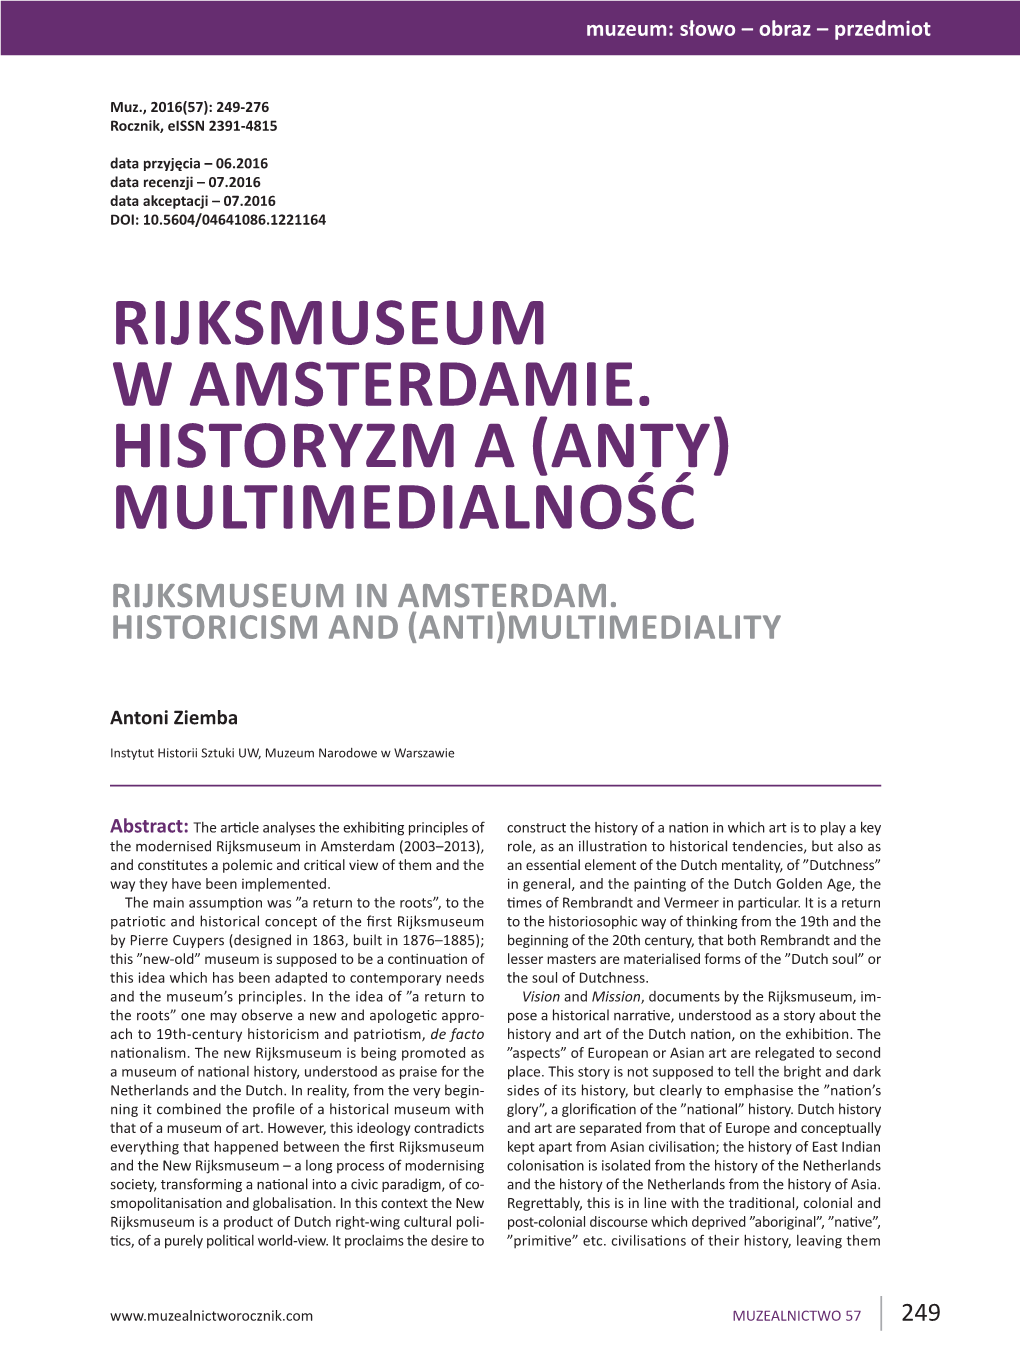 Rijksmuseum W Amsterdamie. Historyzm a (Anty) Multimedialność Rijksmuseum in Amsterdam